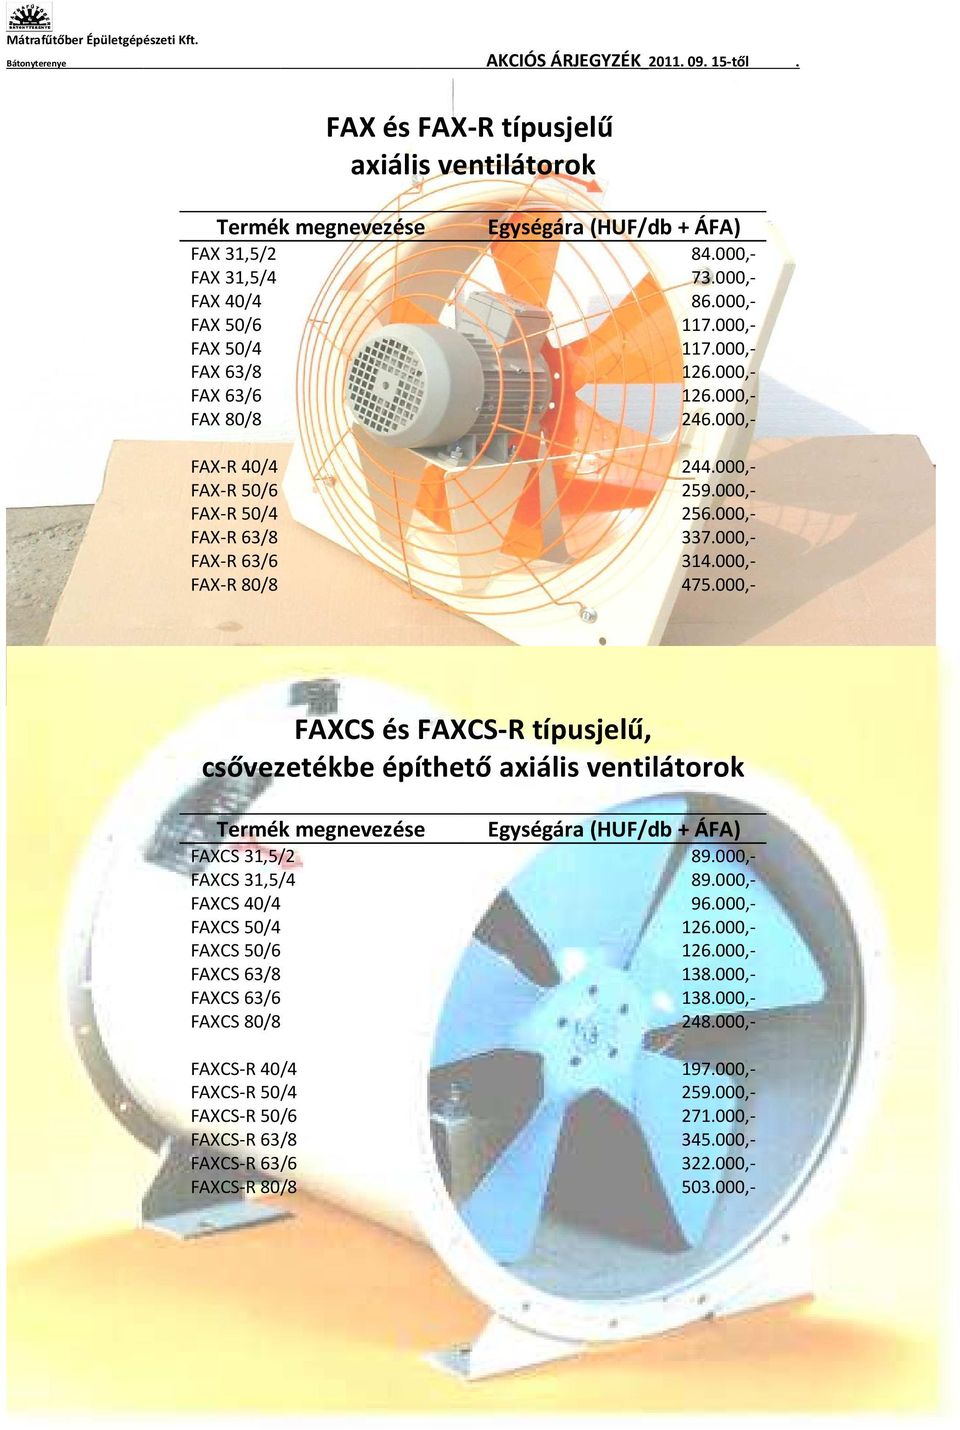 000,- FAXCS és FAXCS-R típusjelű, csővezetékbe építhető axiális ventilátorok FAXCS 31,5/2 89.000,- FAXCS 31,5/4 89.000,- FAXCS 40/4 96.000,- FAXCS 50/4 126.